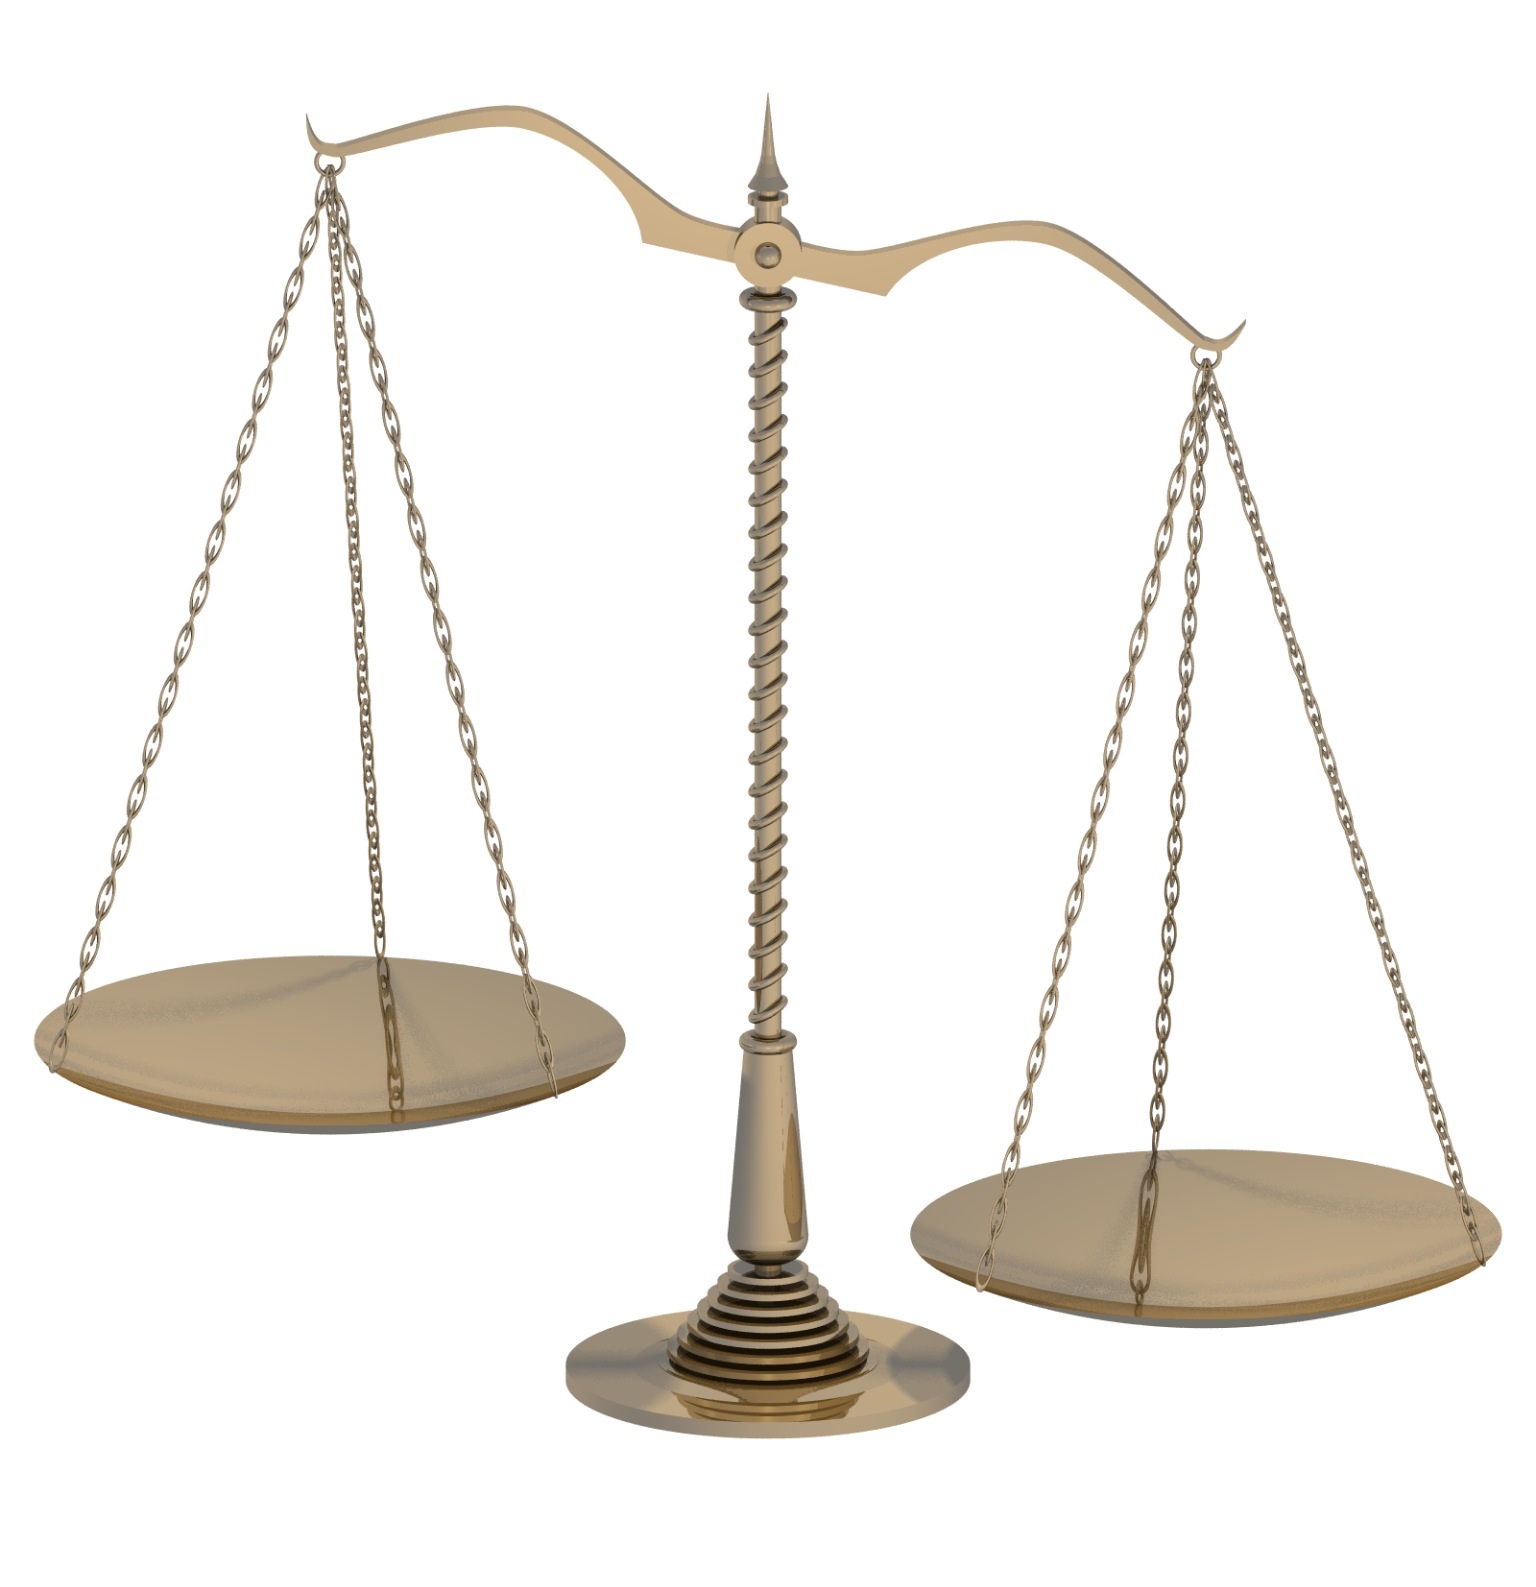 Balance Scale Image